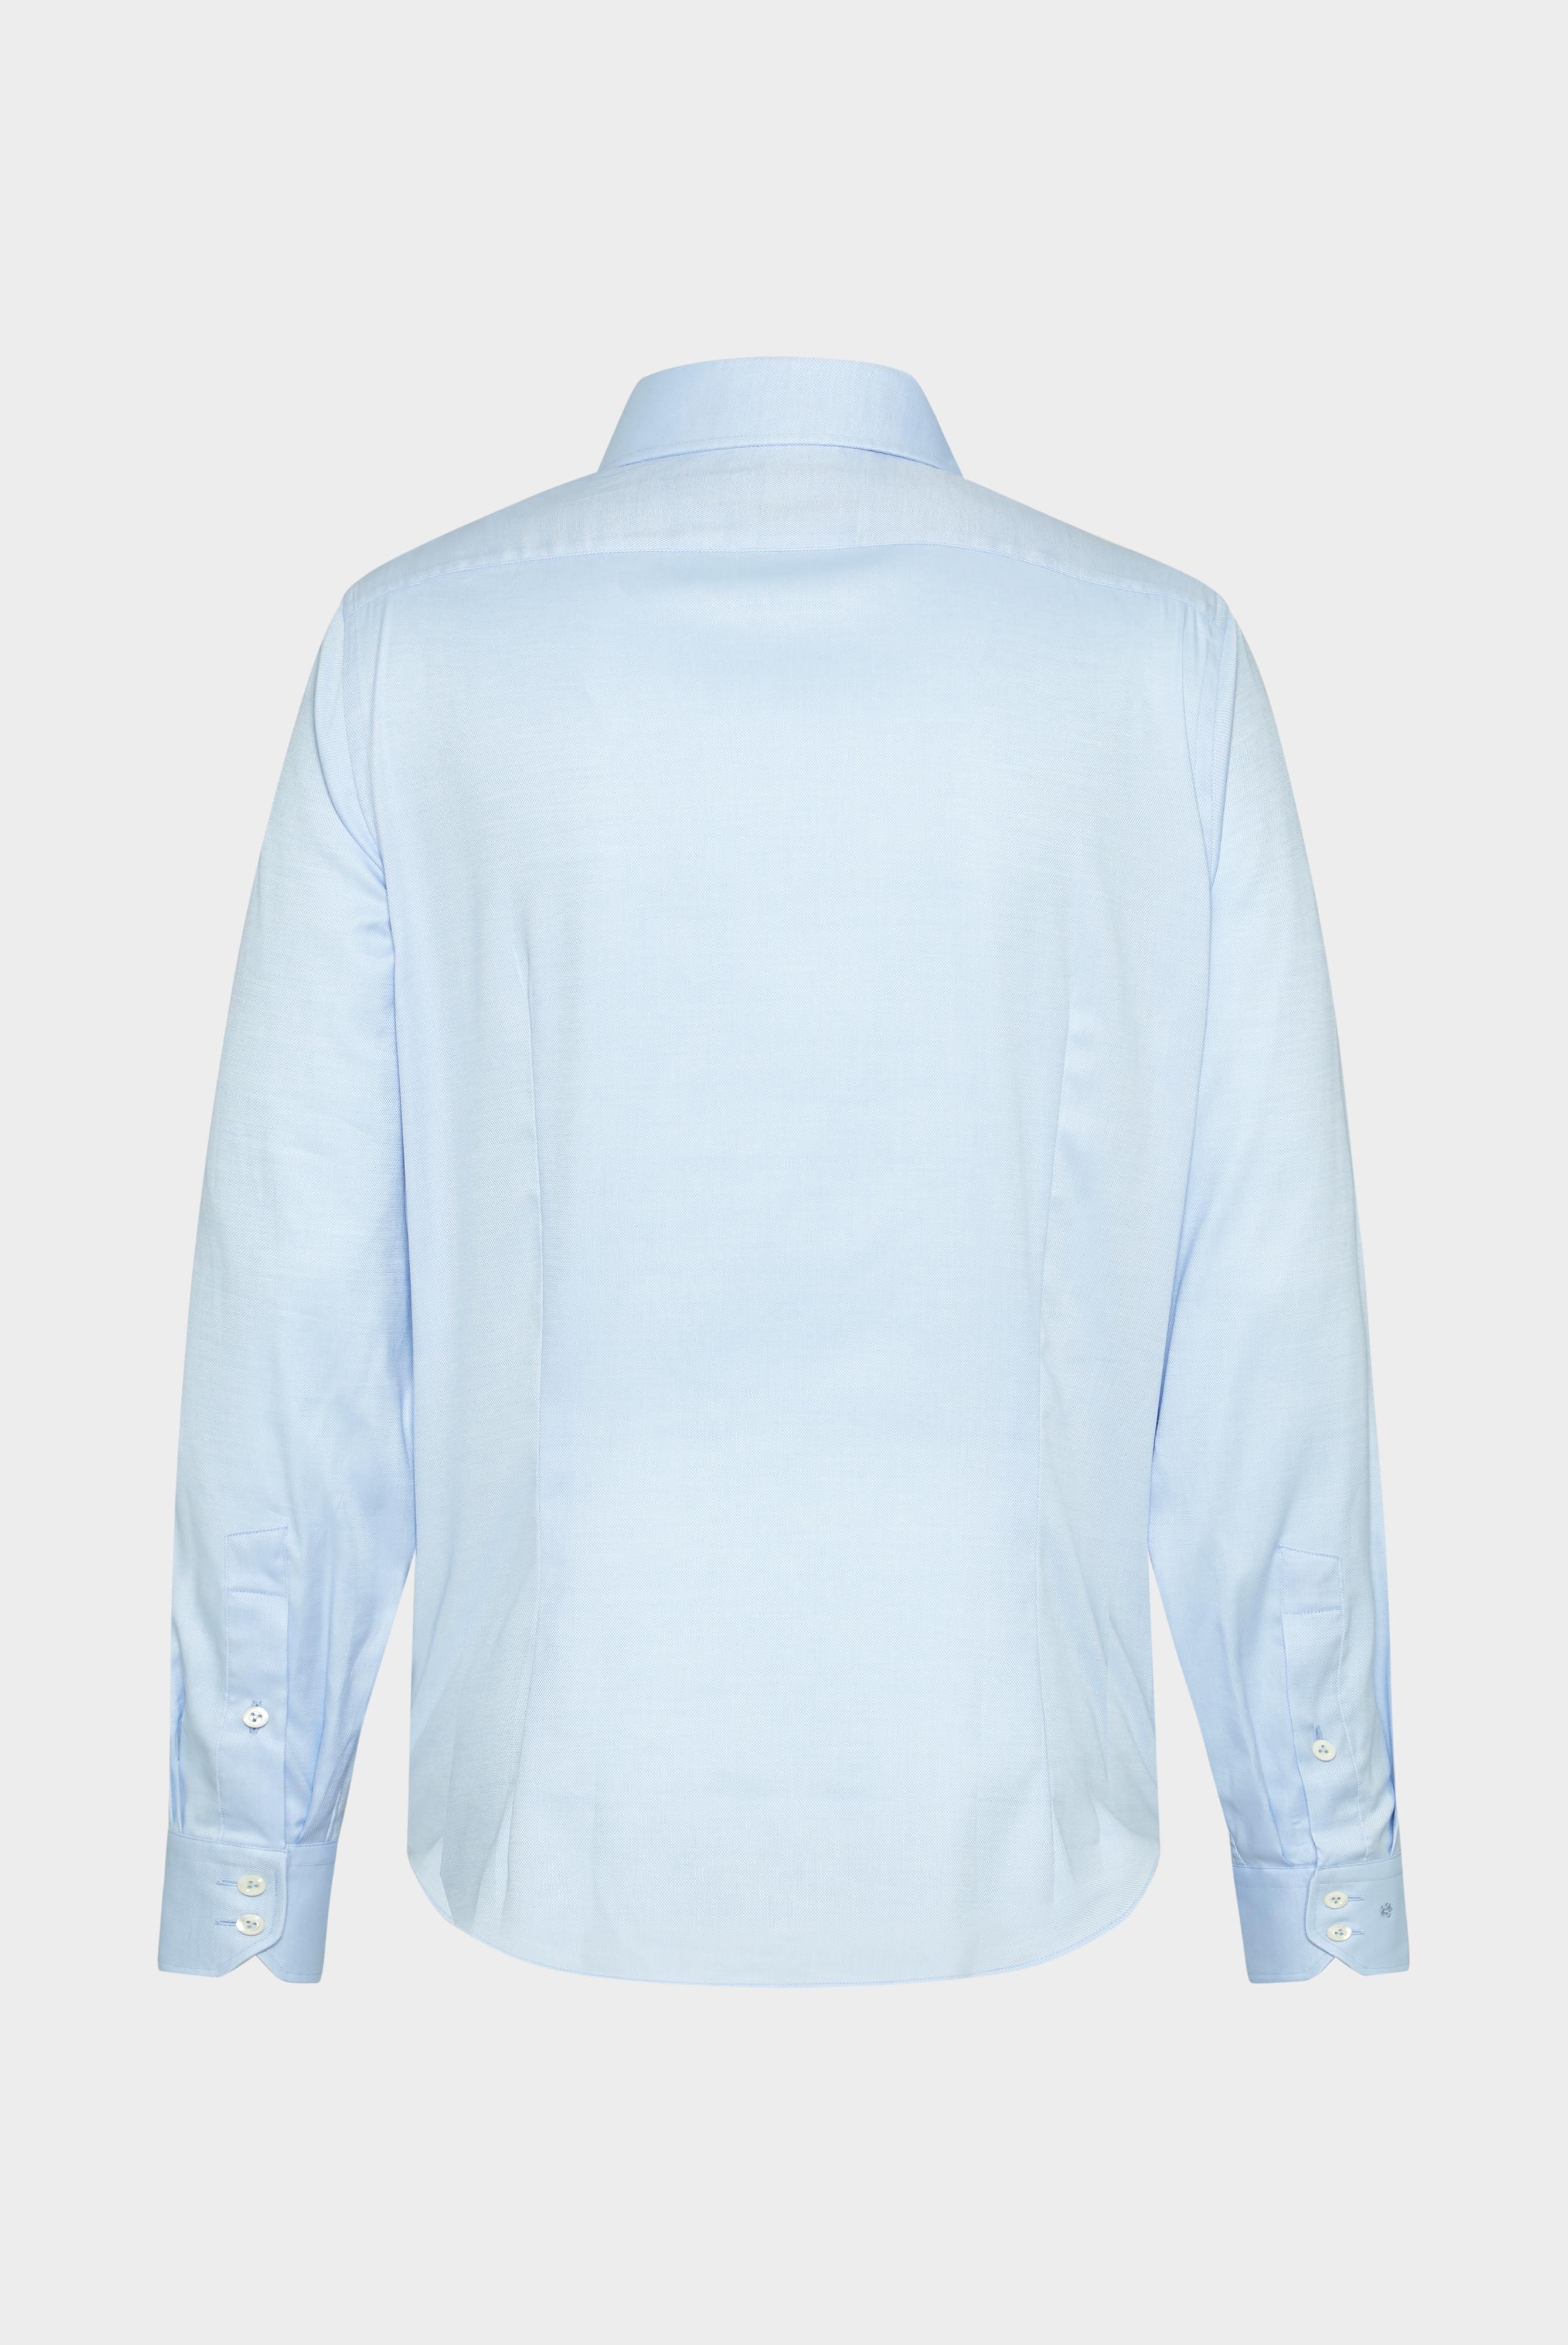 Business Shirts+Structured Plain Shirt, Natté/Basket Weave+20.2020.AV.130872.720.37